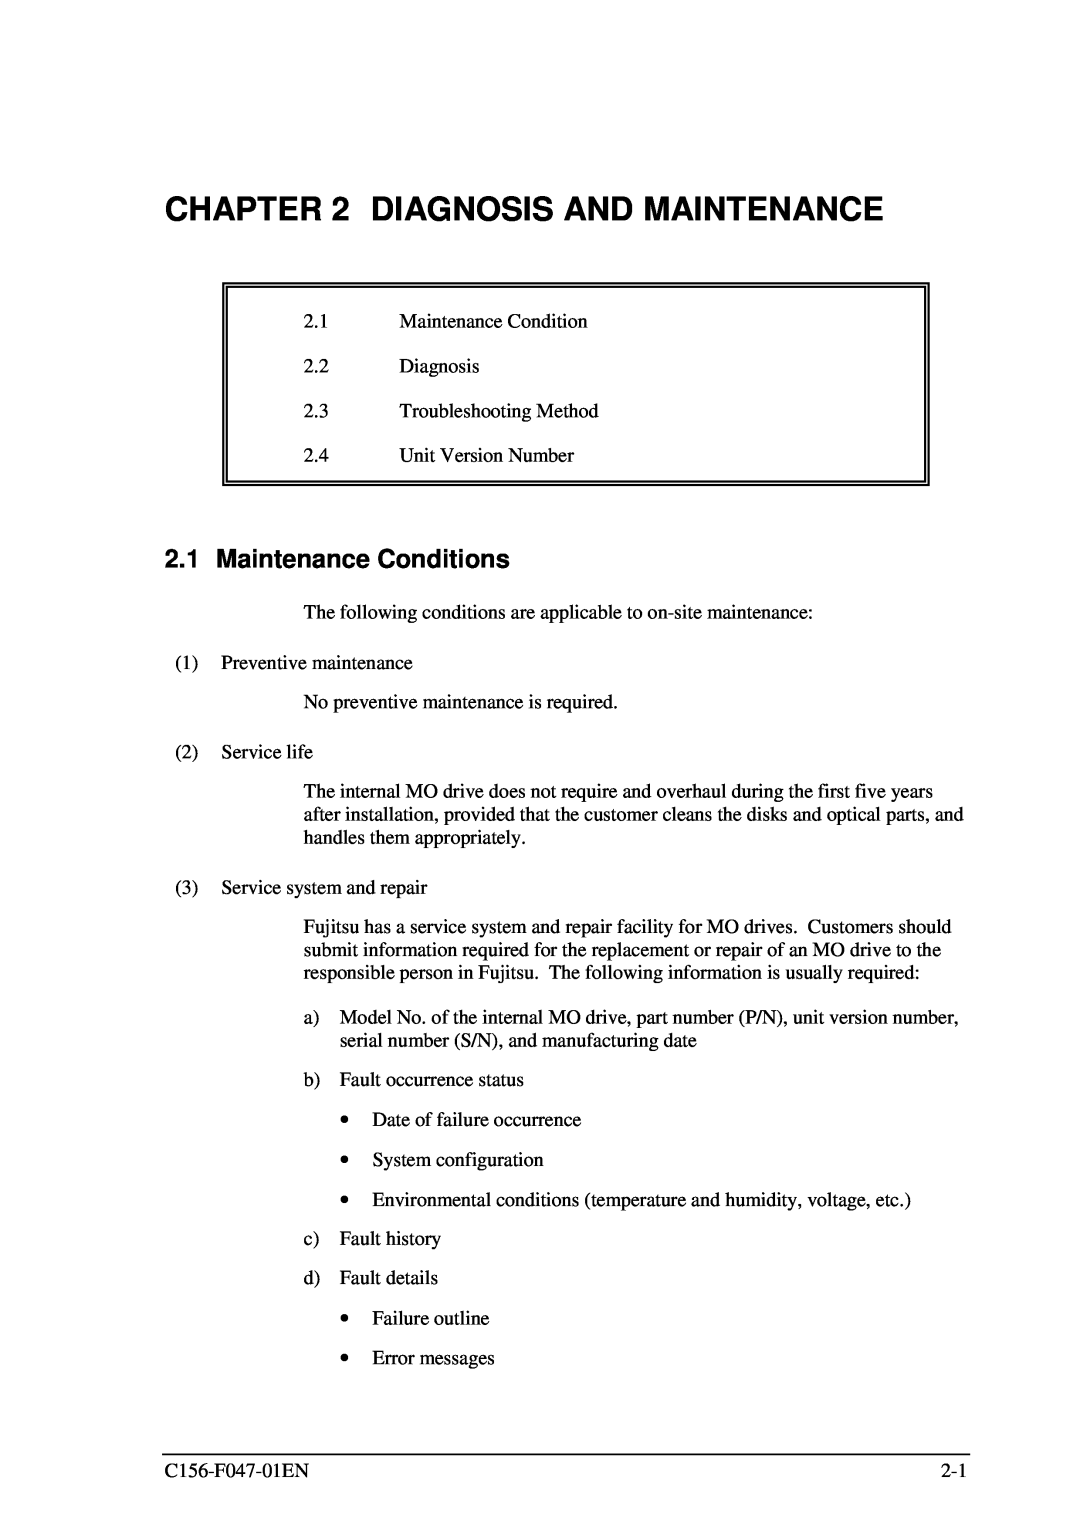 Fujitsu MDG3230UB manual Diagnosis And Maintenance, Maintenance Conditions 